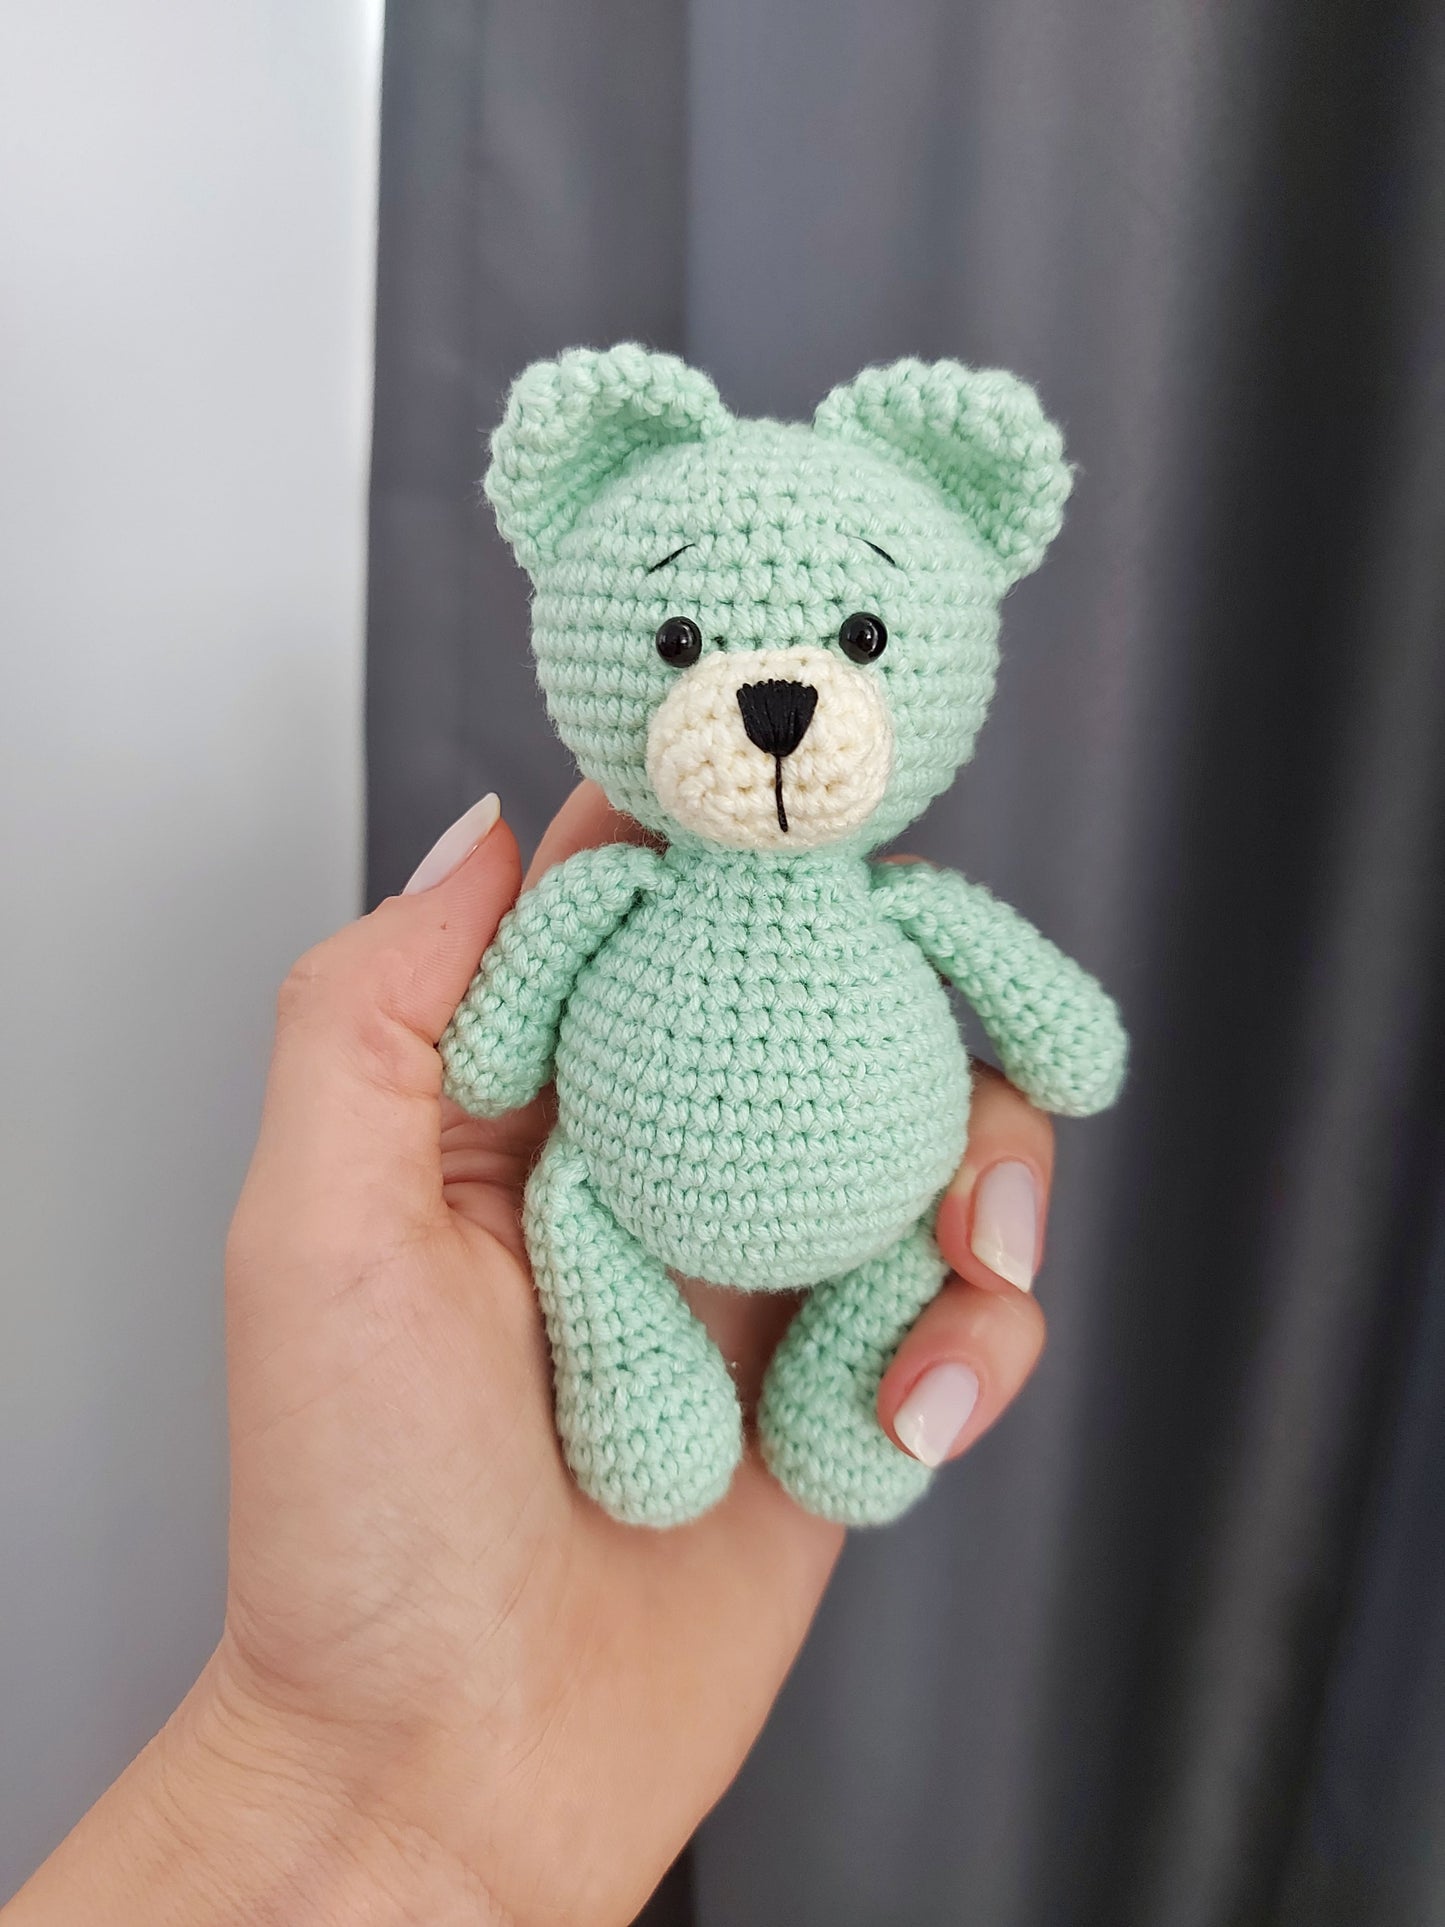 crochet little bear toy pattern, CROCHET PDF PATTERN (English)